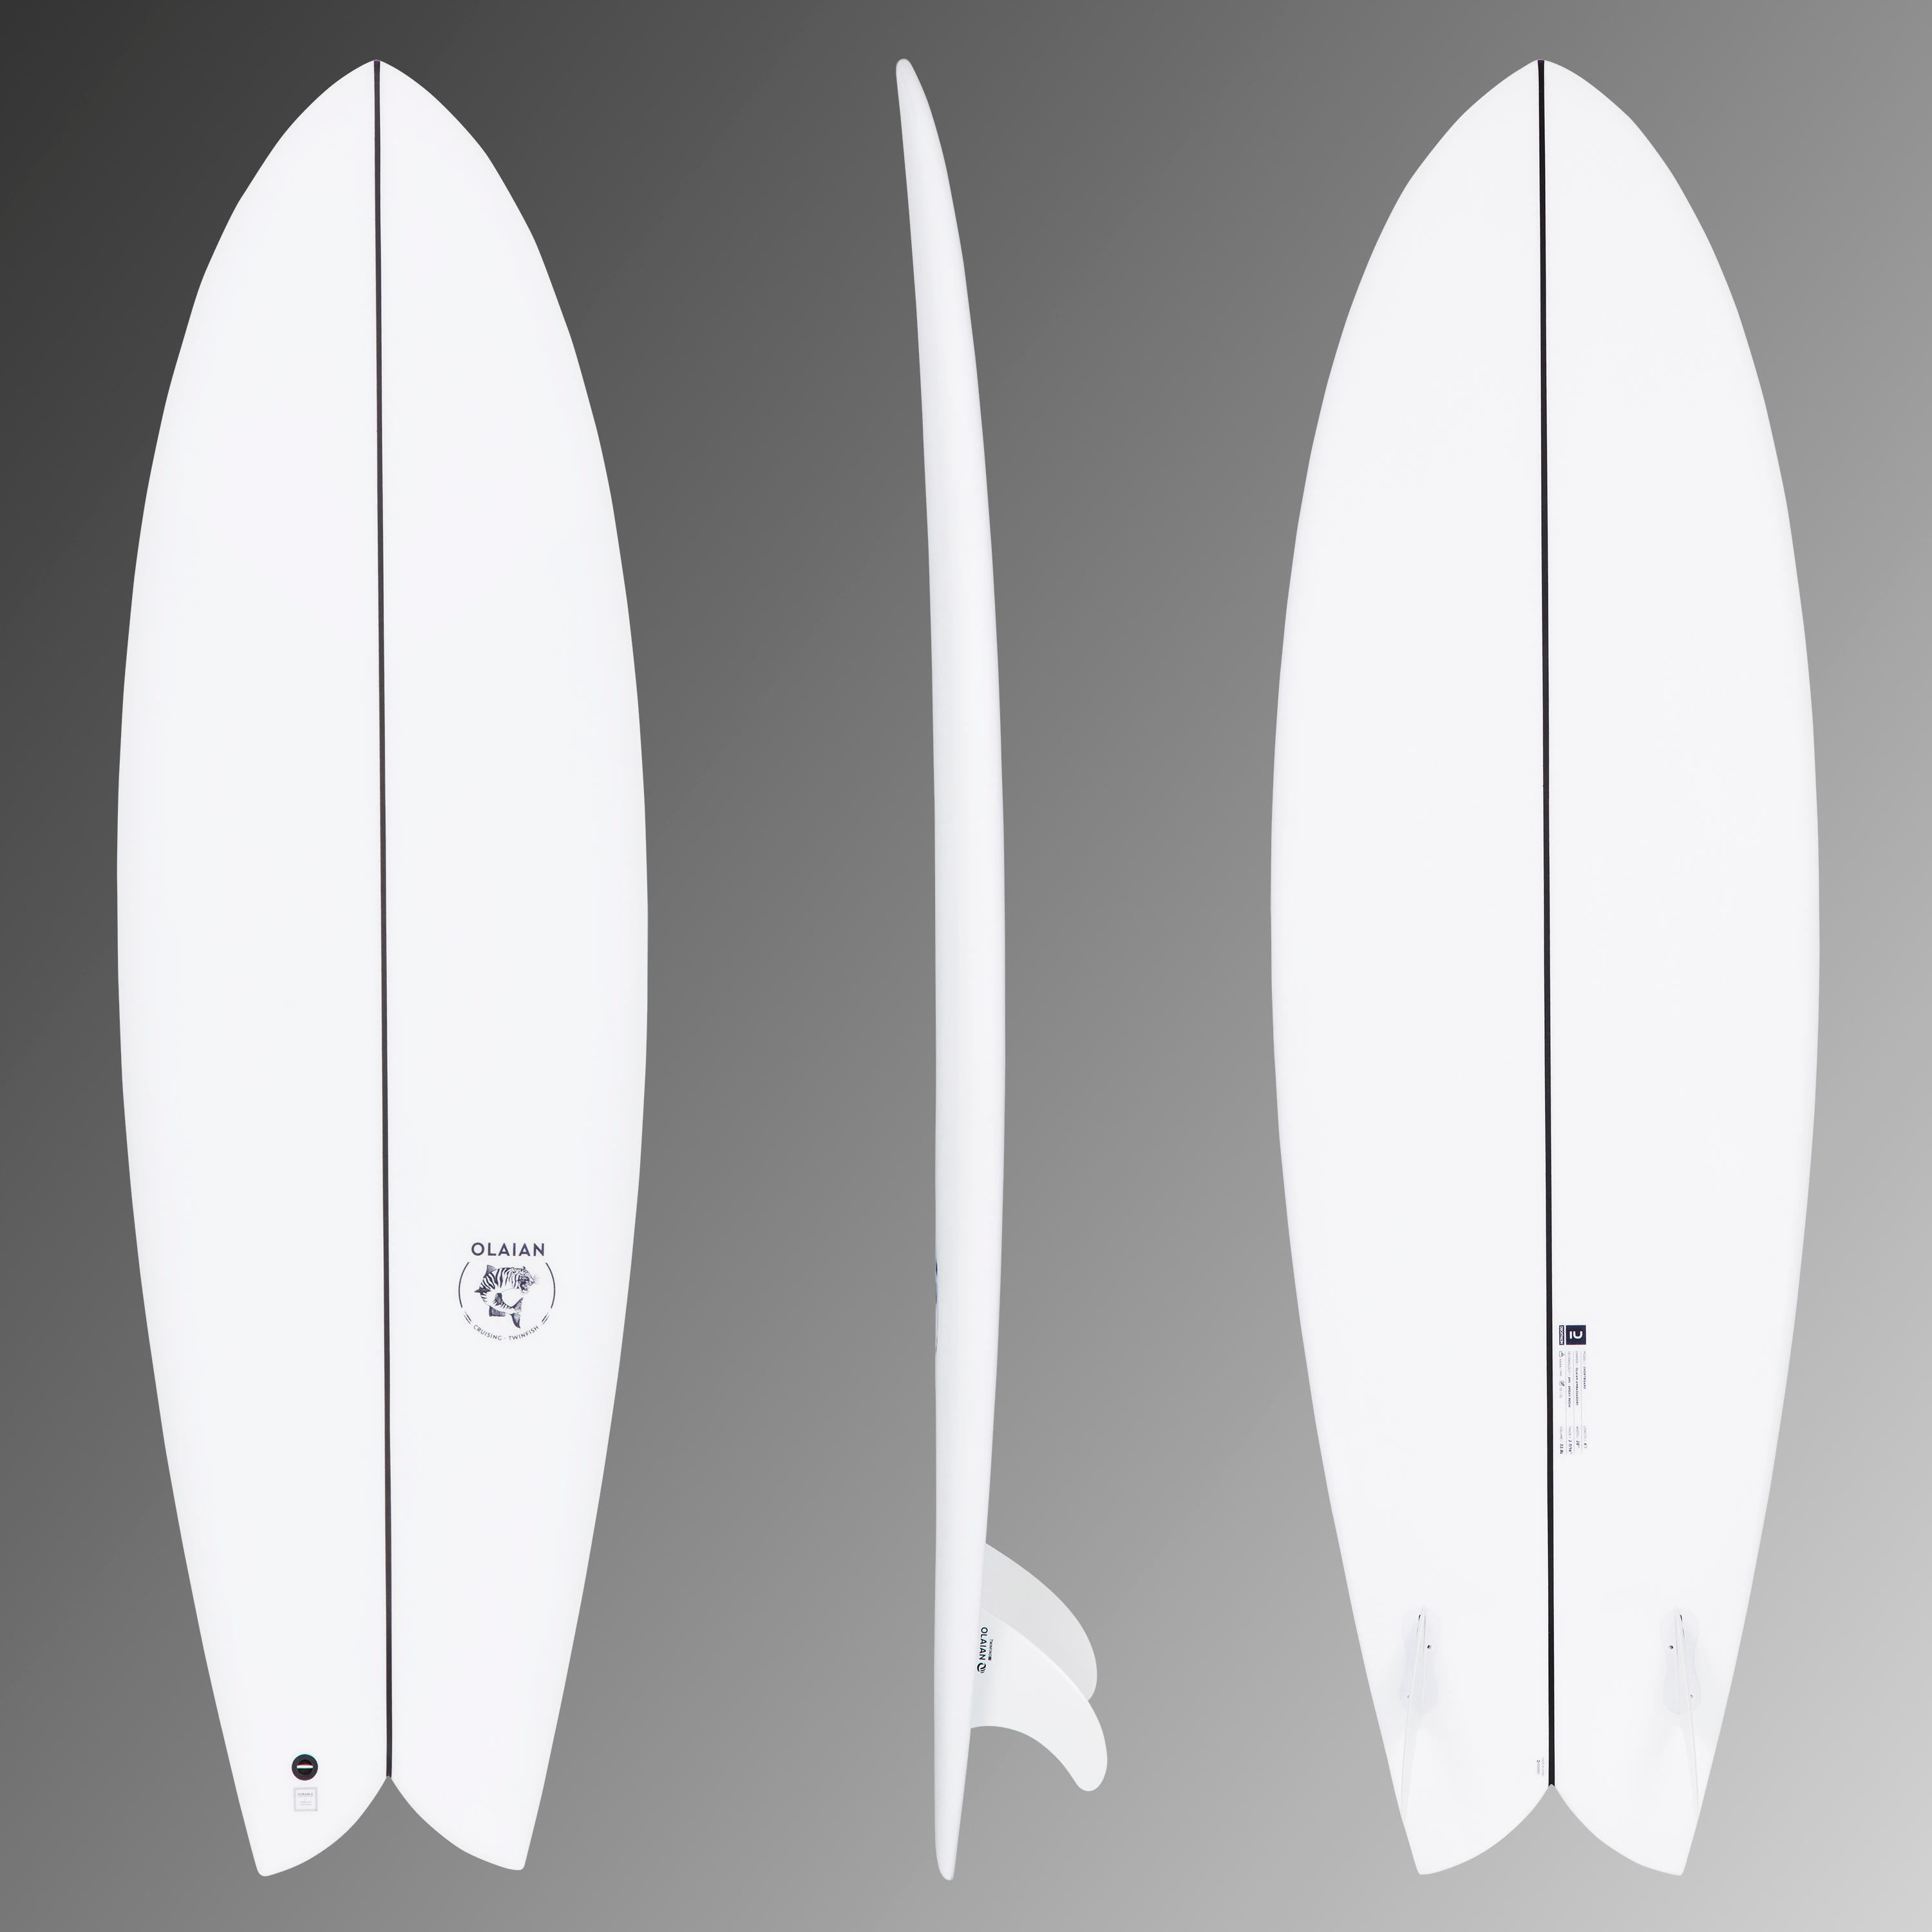 Placă surf 900 Fish 6’1 42 L La Oferta Online decathlon imagine La Oferta Online